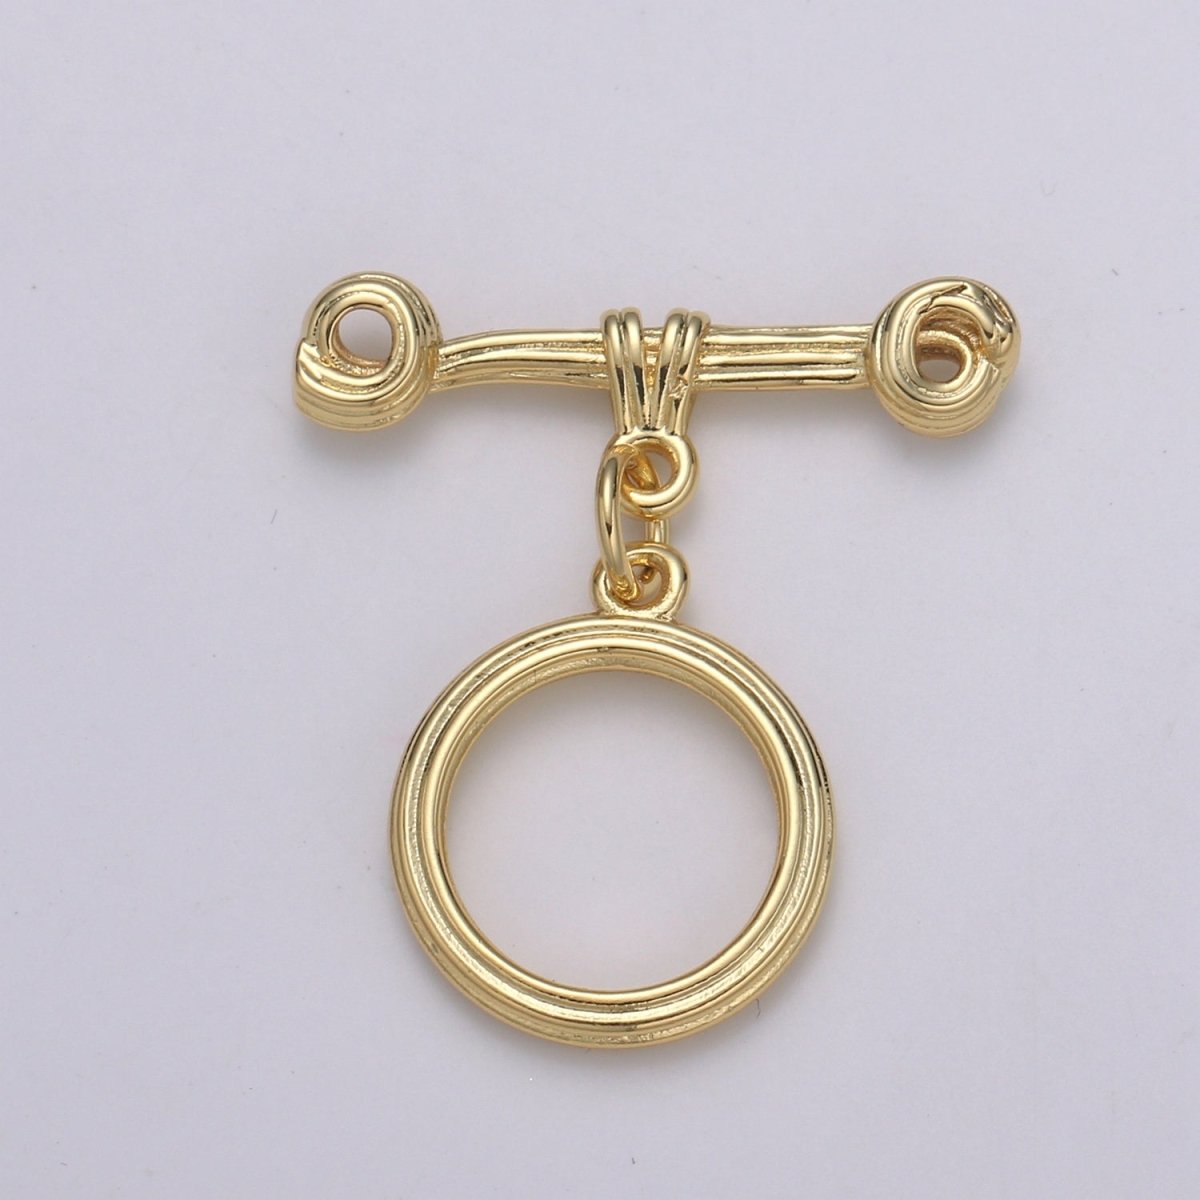 24K Gold Filled Toggle Clasp Black / Rose Gold / Gold / Silver For DIY Jewelry Making Necklace Bracelet Anklet L-217~L-220 - DLUXCA